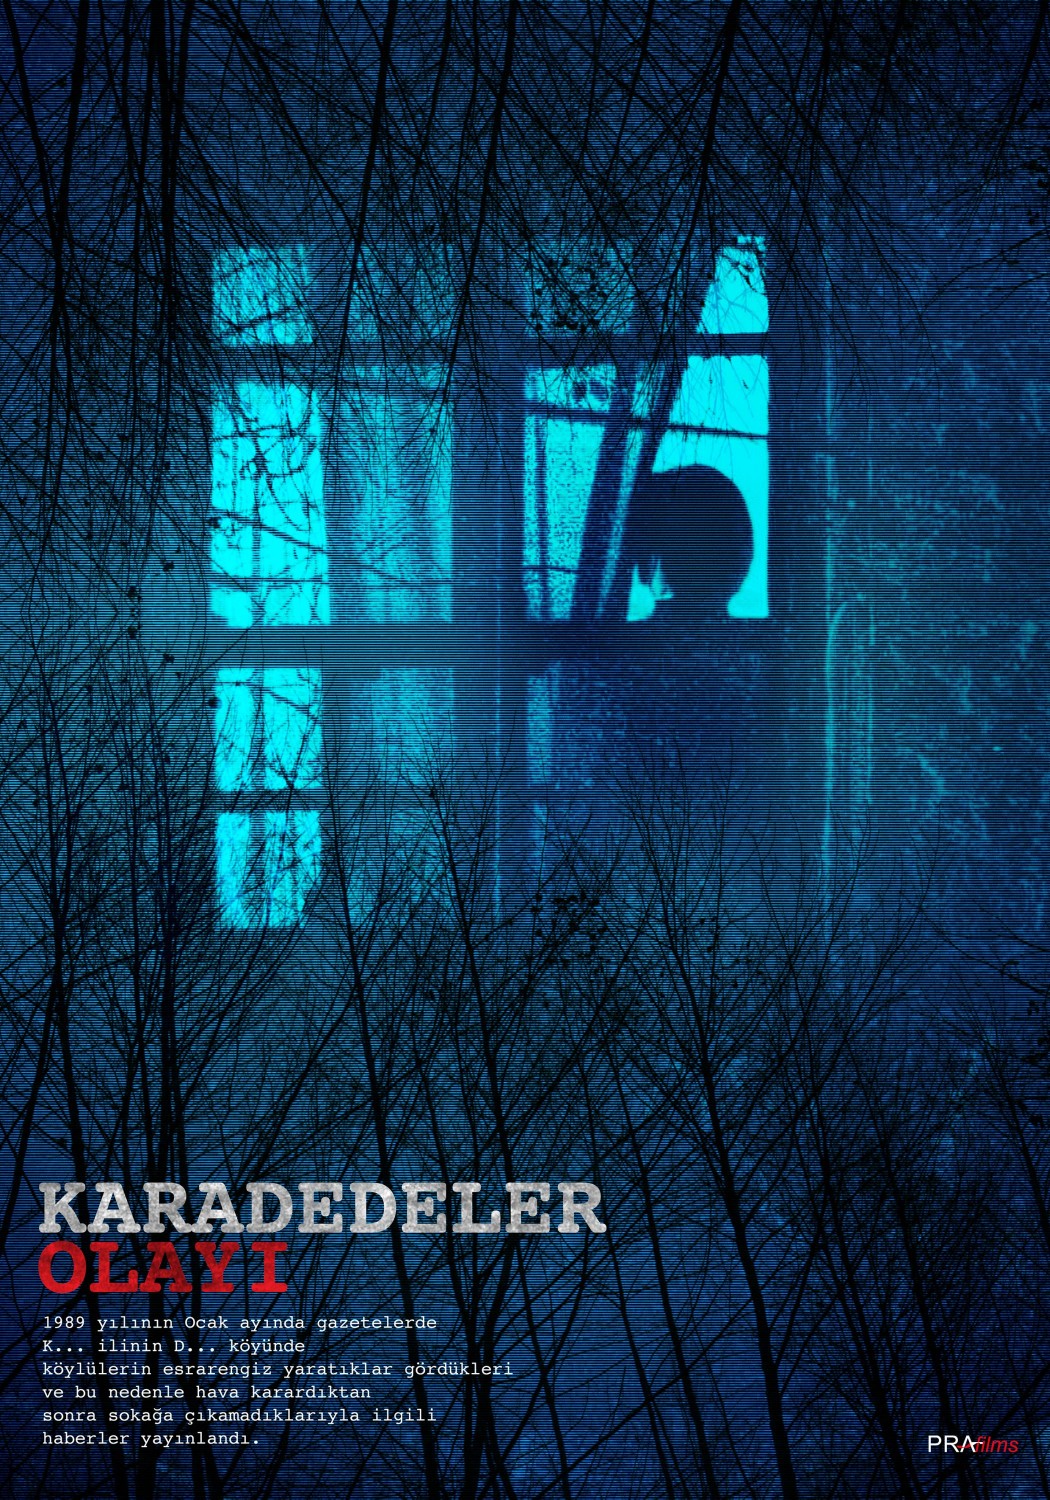 Extra Large Movie Poster Image for Karadedeler Olayi 